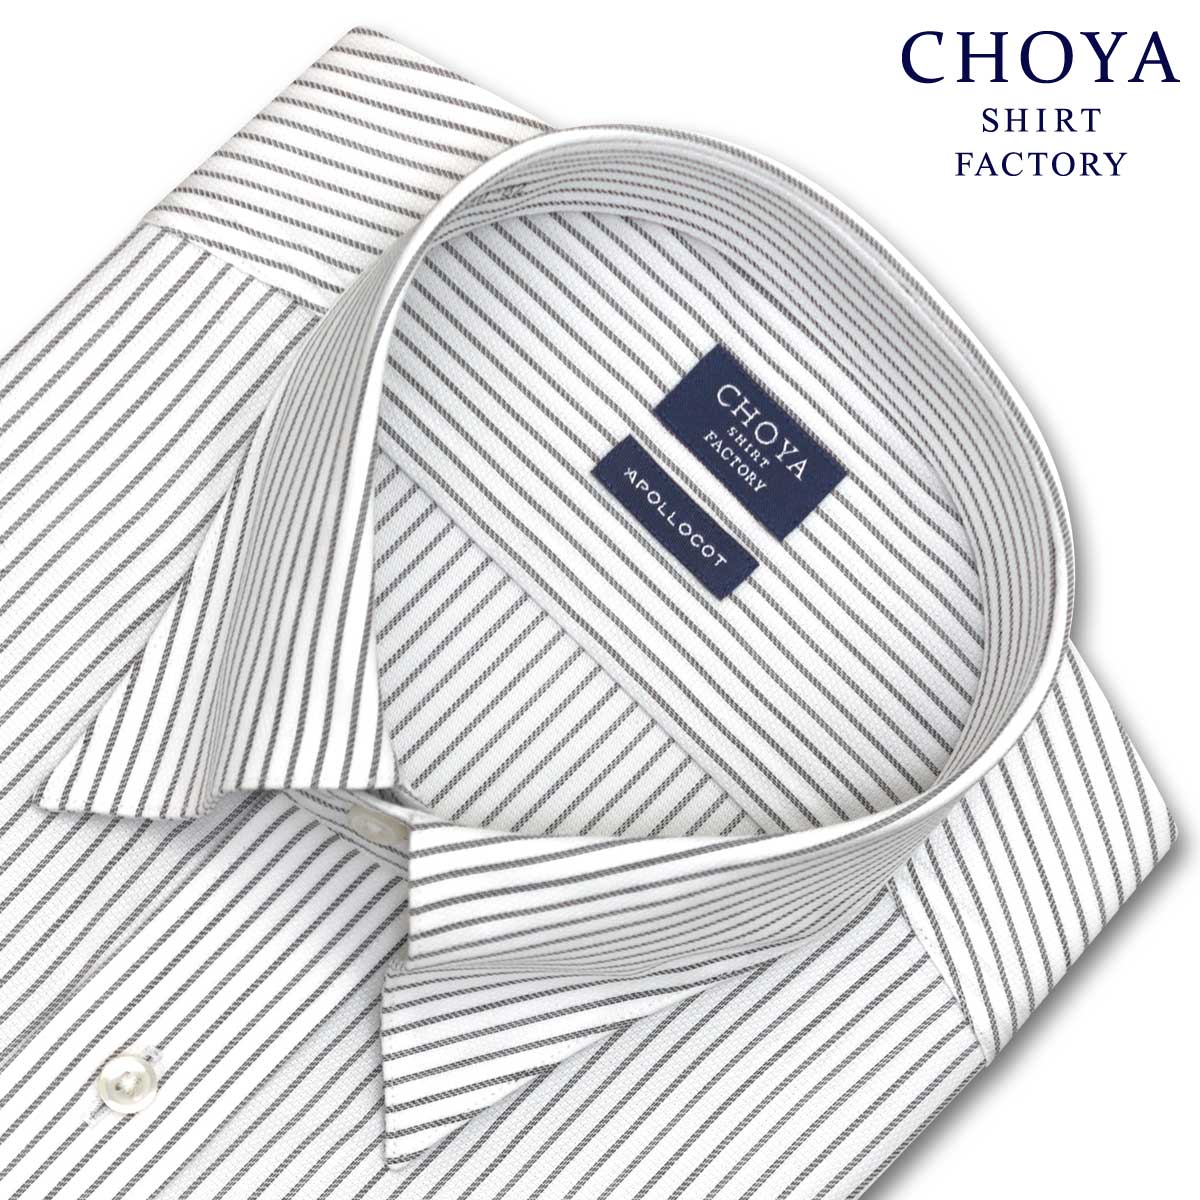 Yシャツ 日清紡アポロコット COOL CONSCIOUS 長袖ワイシャツ メンズ 形態安定 グレーストライプ スナップダウンシャツ 綿100% グレー CHOYA SHIRT FACTORY(cfd431-480)